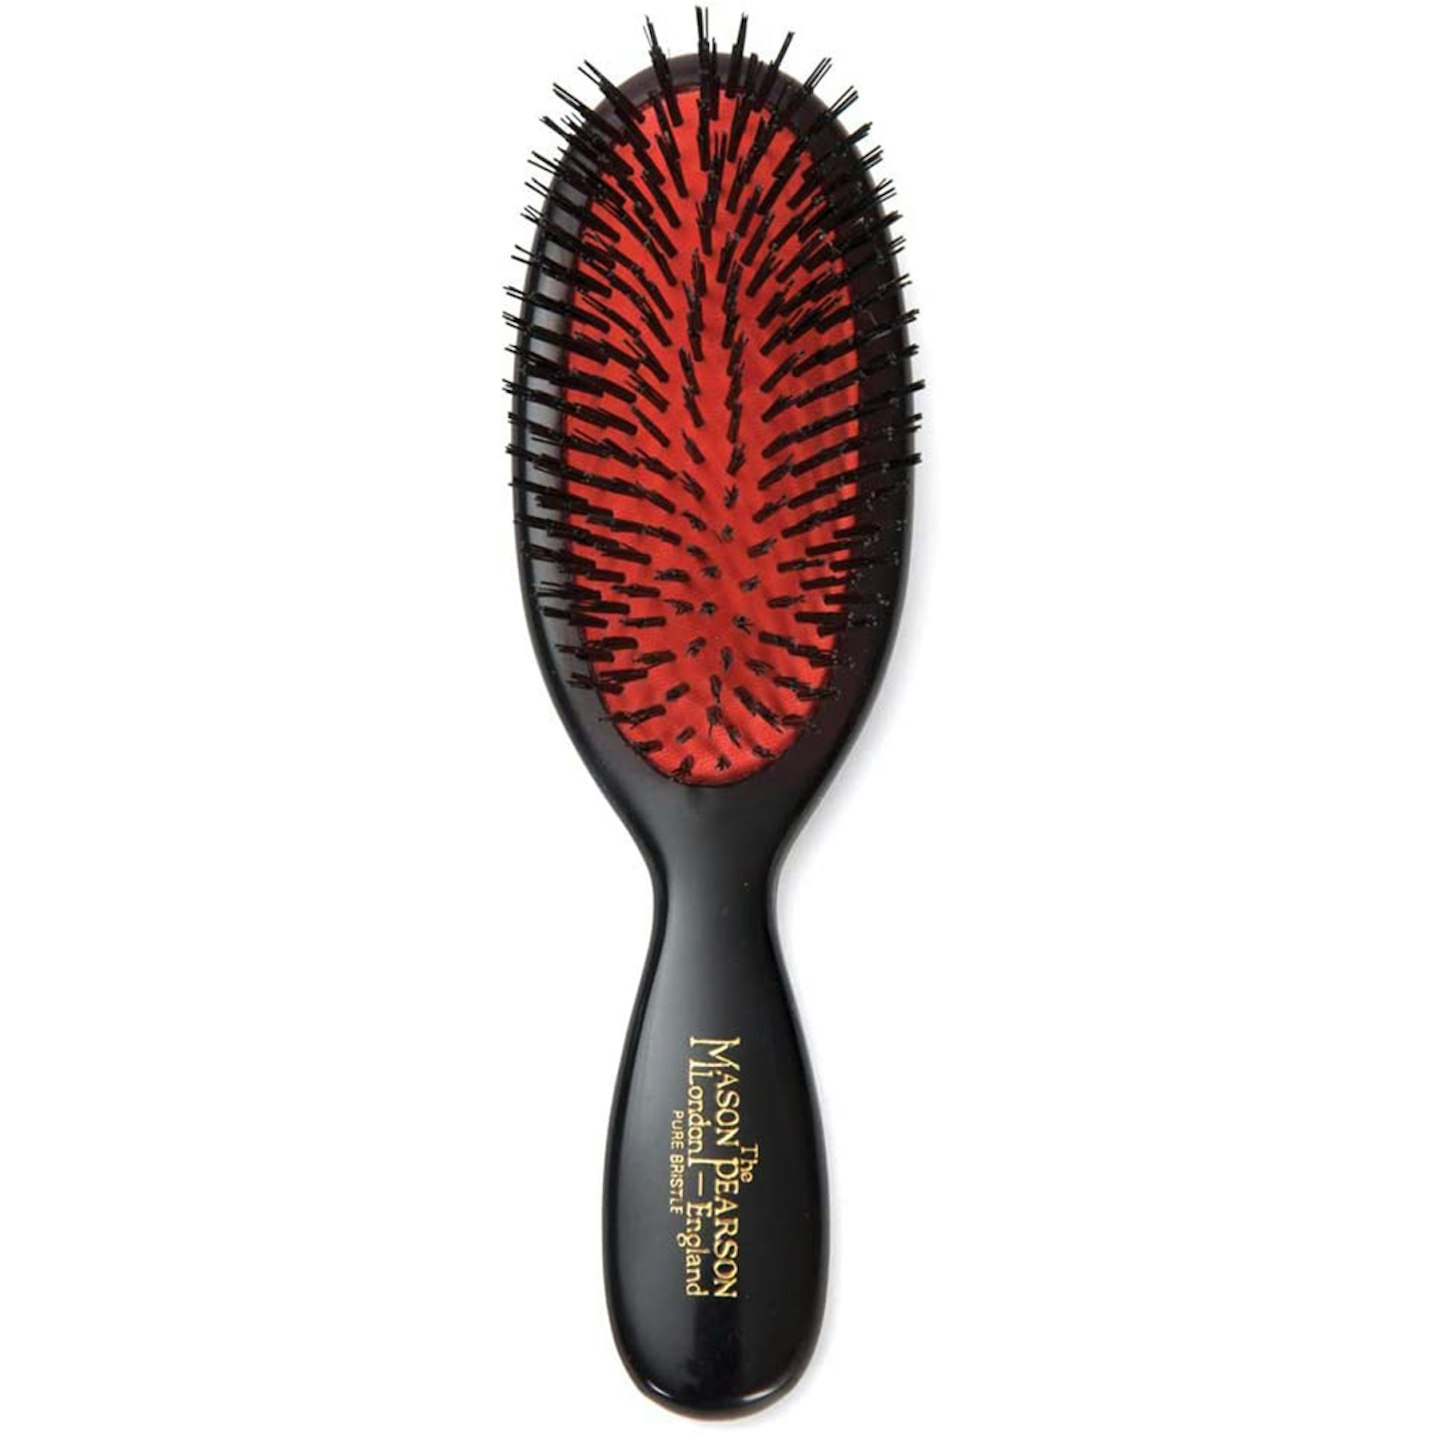 Best hair brushes - Mason Pearson hair brush